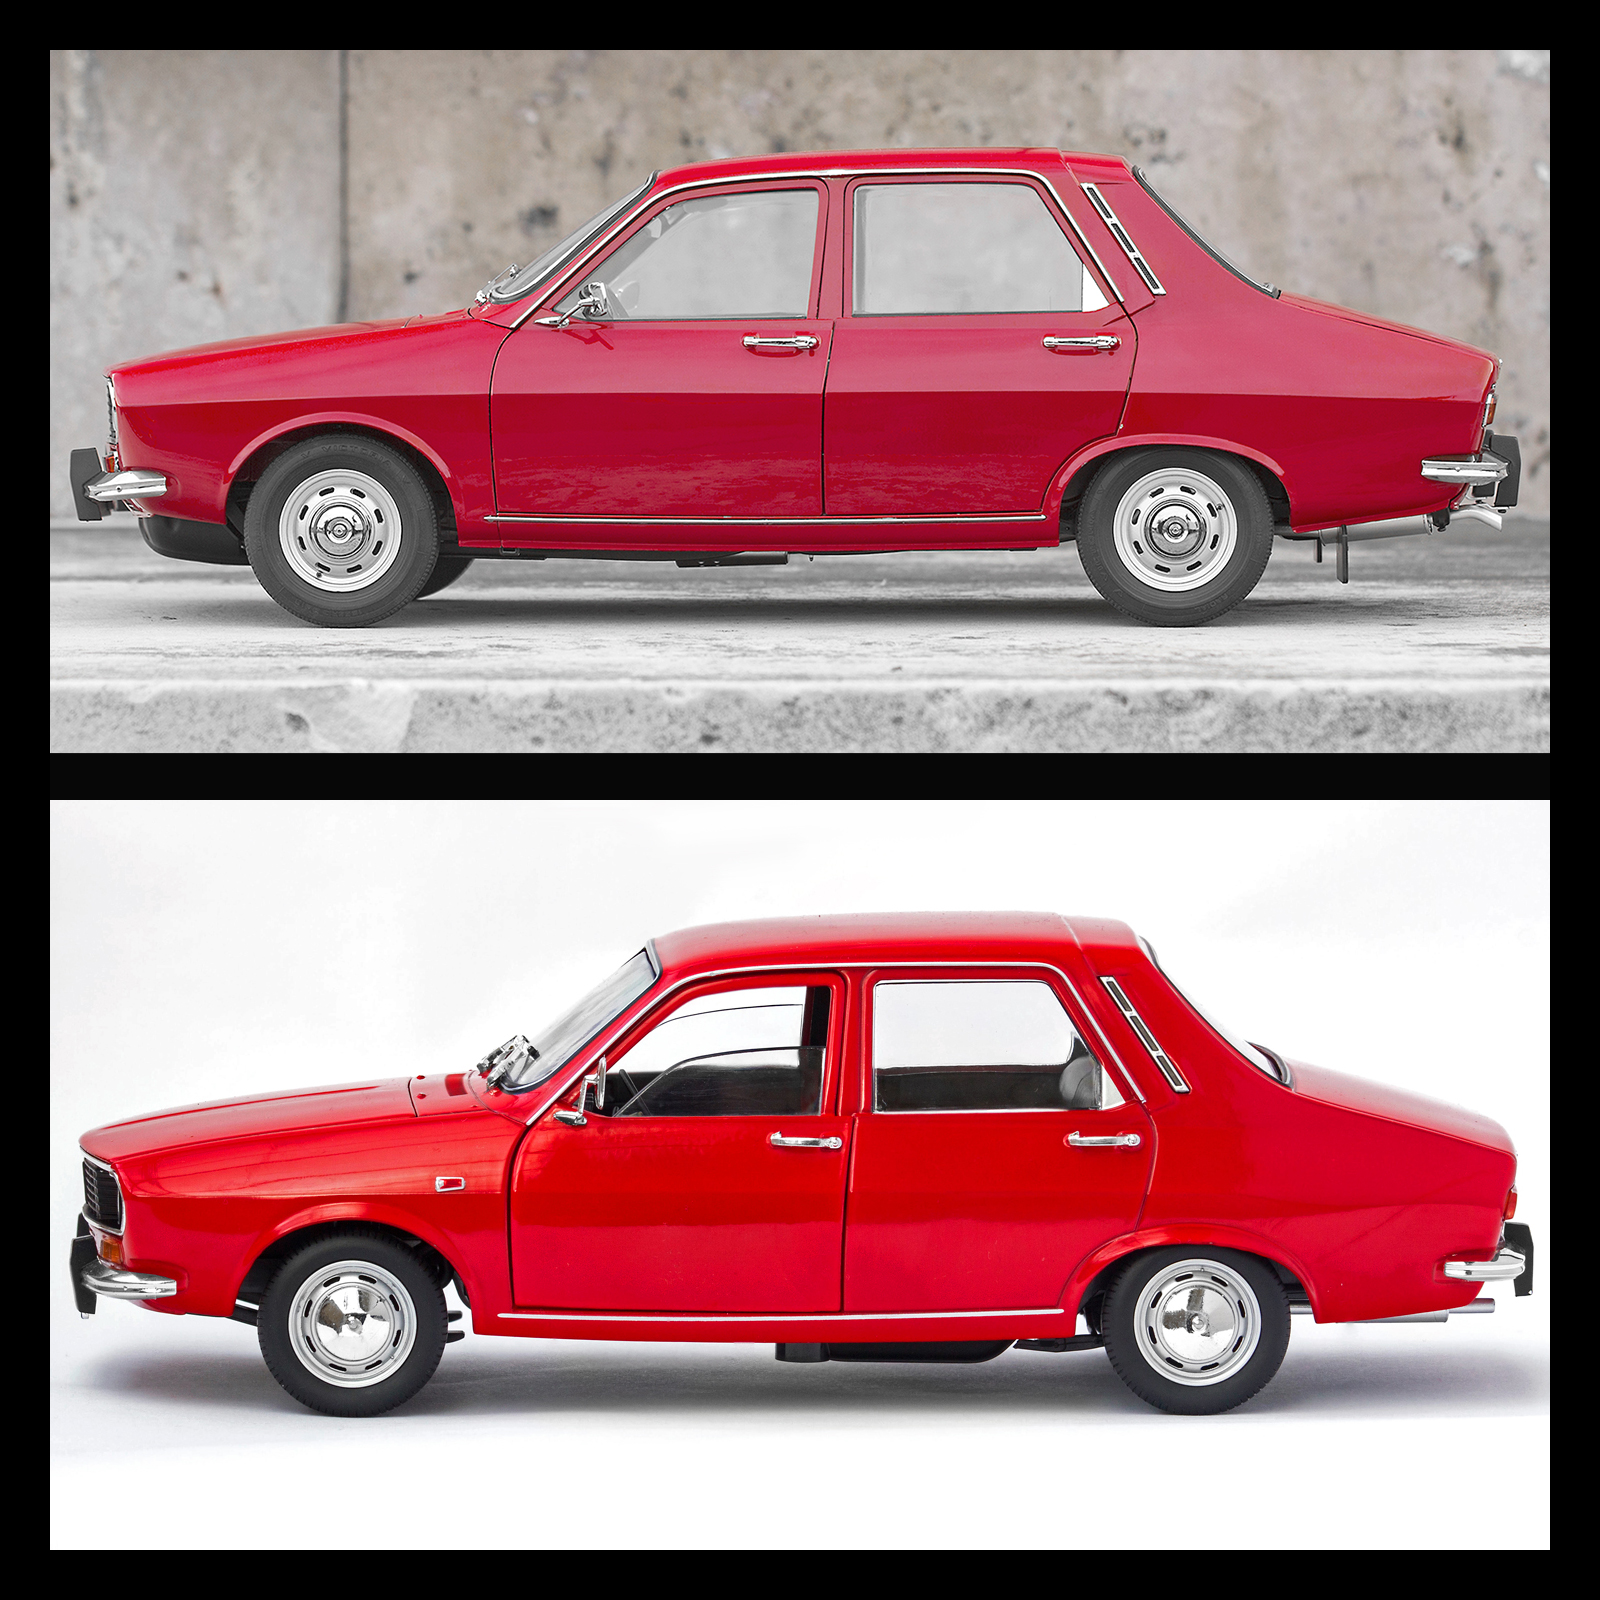 Dacia-1300-vs-Dacia-1300-1-8